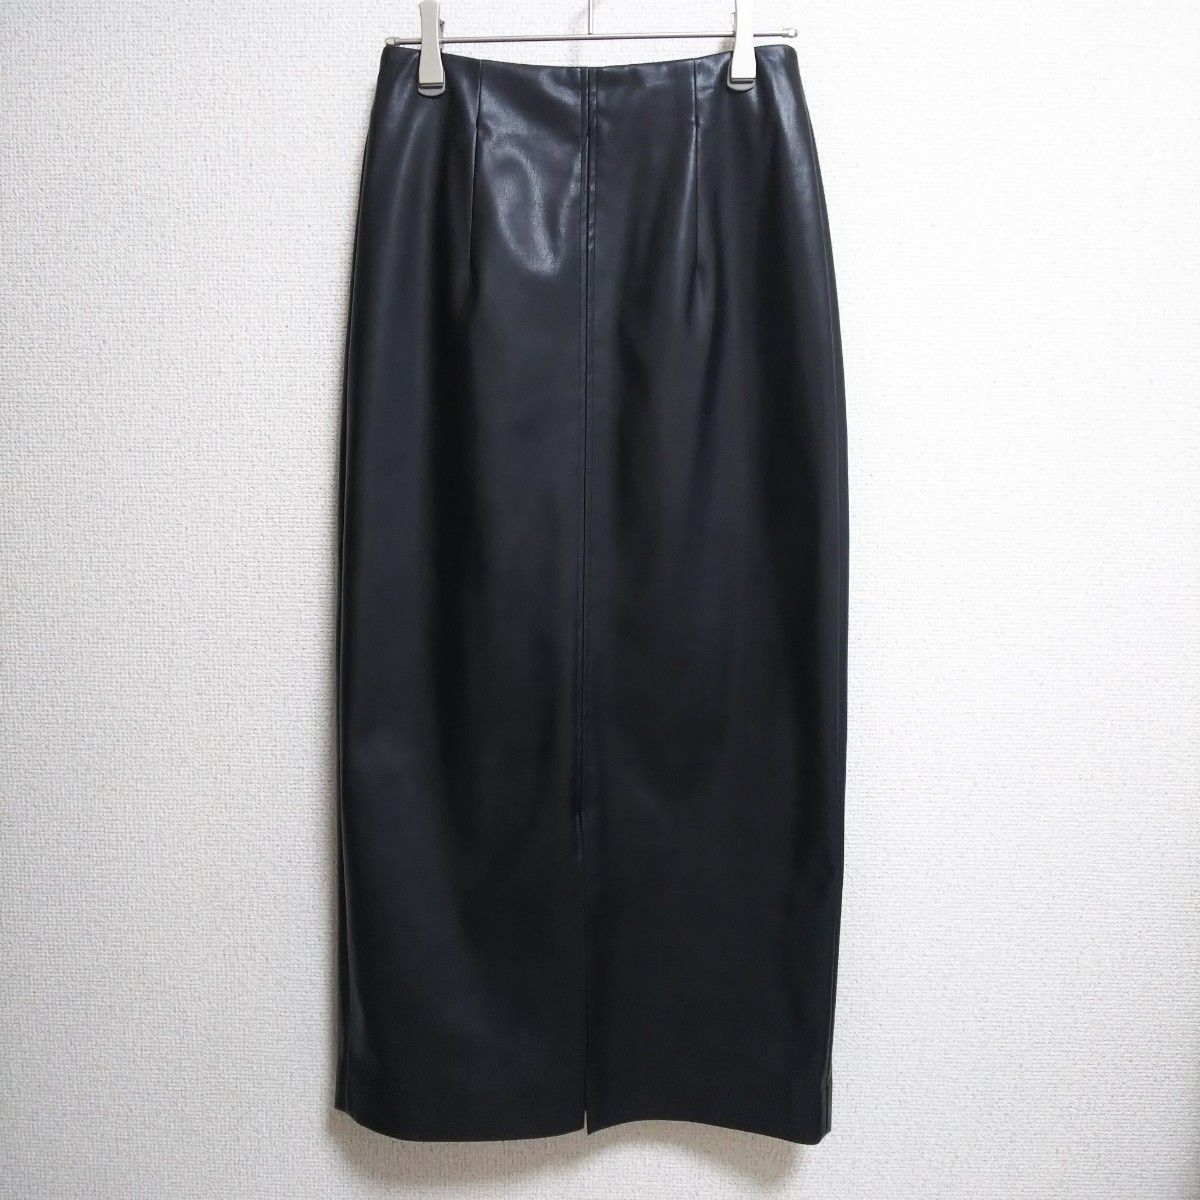 NOLLEY'S sophi☆フェイクレザーハイウエストタイトスカート【size36】